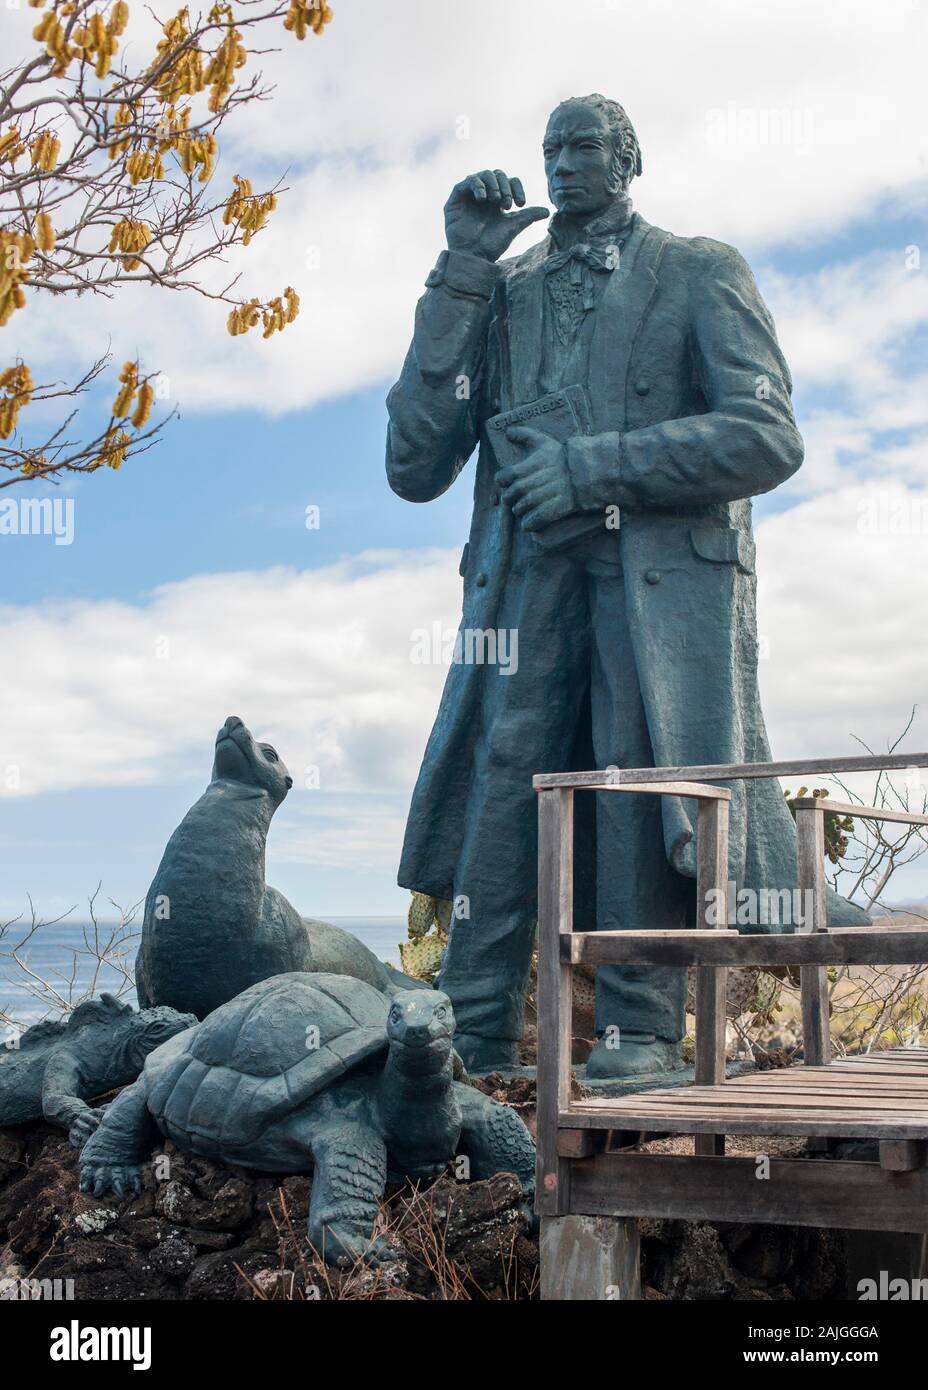 Statue de Charles Darwin sur l'île de Christophe Colomb, Galapagos, Equateur. Banque D'Images